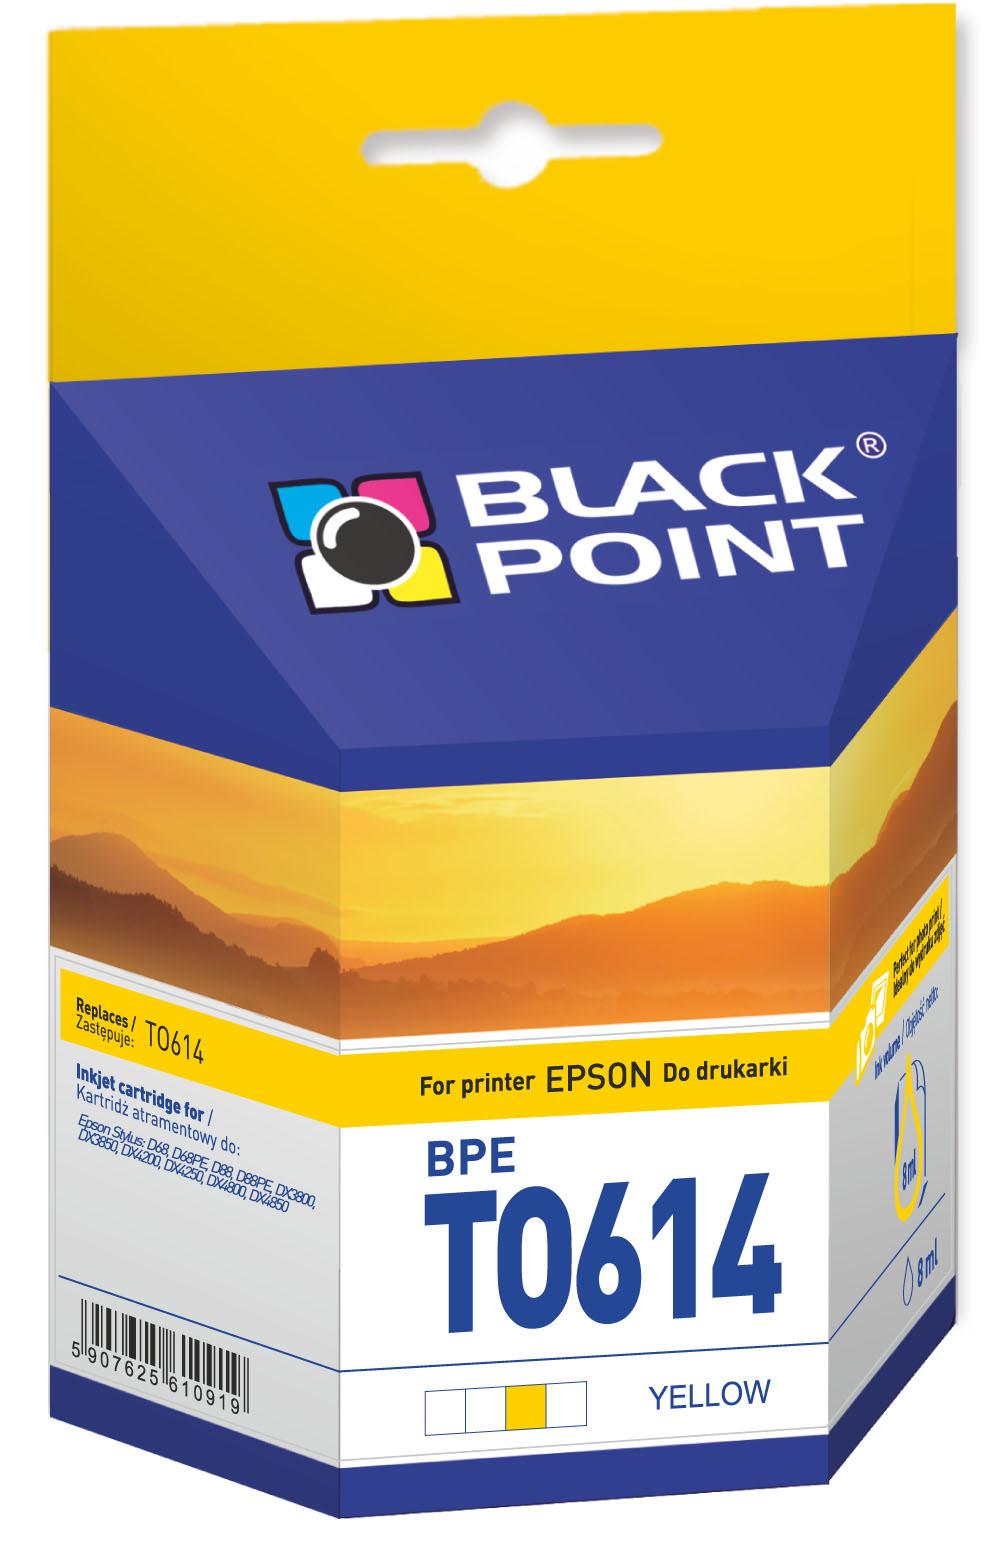 CMYK - Black Point tusz BPET0614 zastępuje Epson T0614, żółty